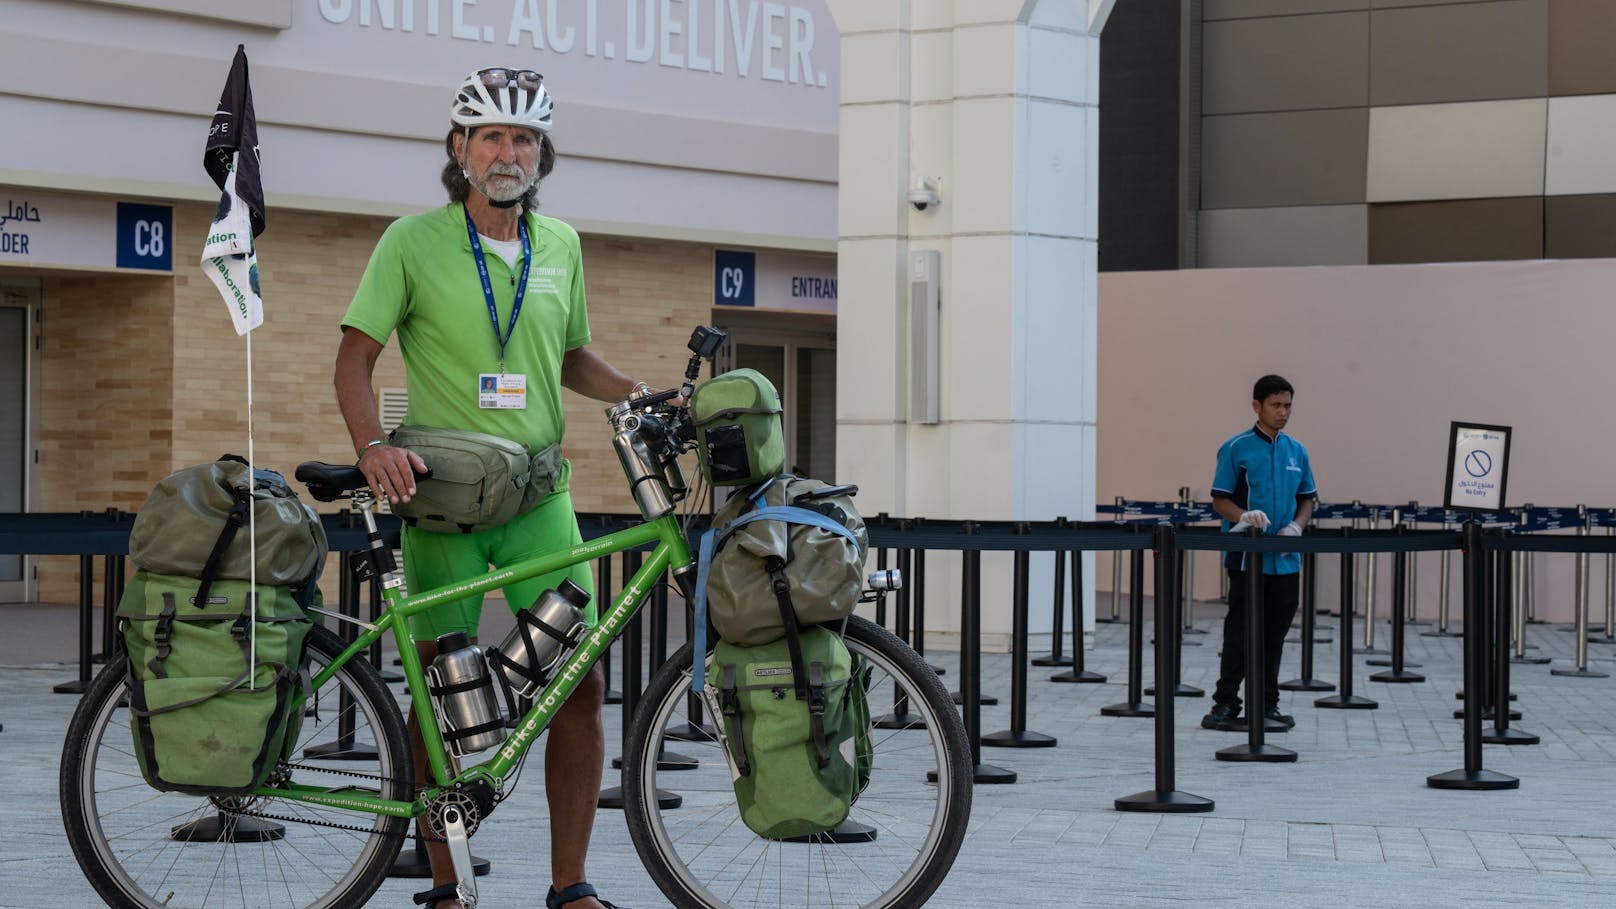 Nach der Weltklimakonferenz COP 28 in Dubai geht es für Michael Evertz noch weiter. Mit dem Rad will er bis Südafrika fahren.